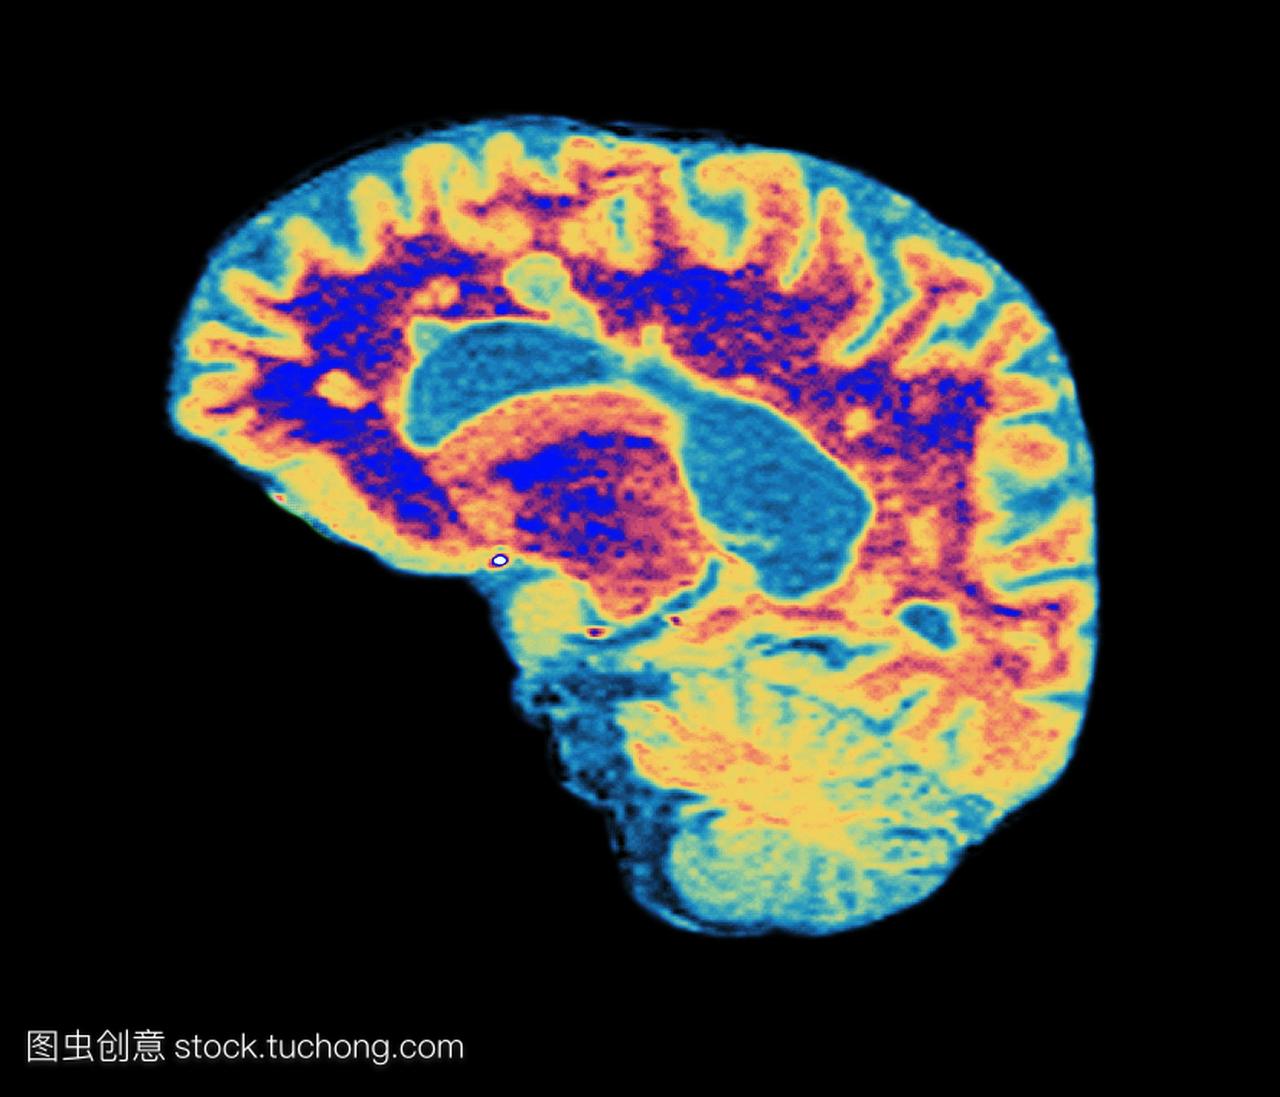 前部在左边。在ms的髓鞘周围,轴突神经纤维紫